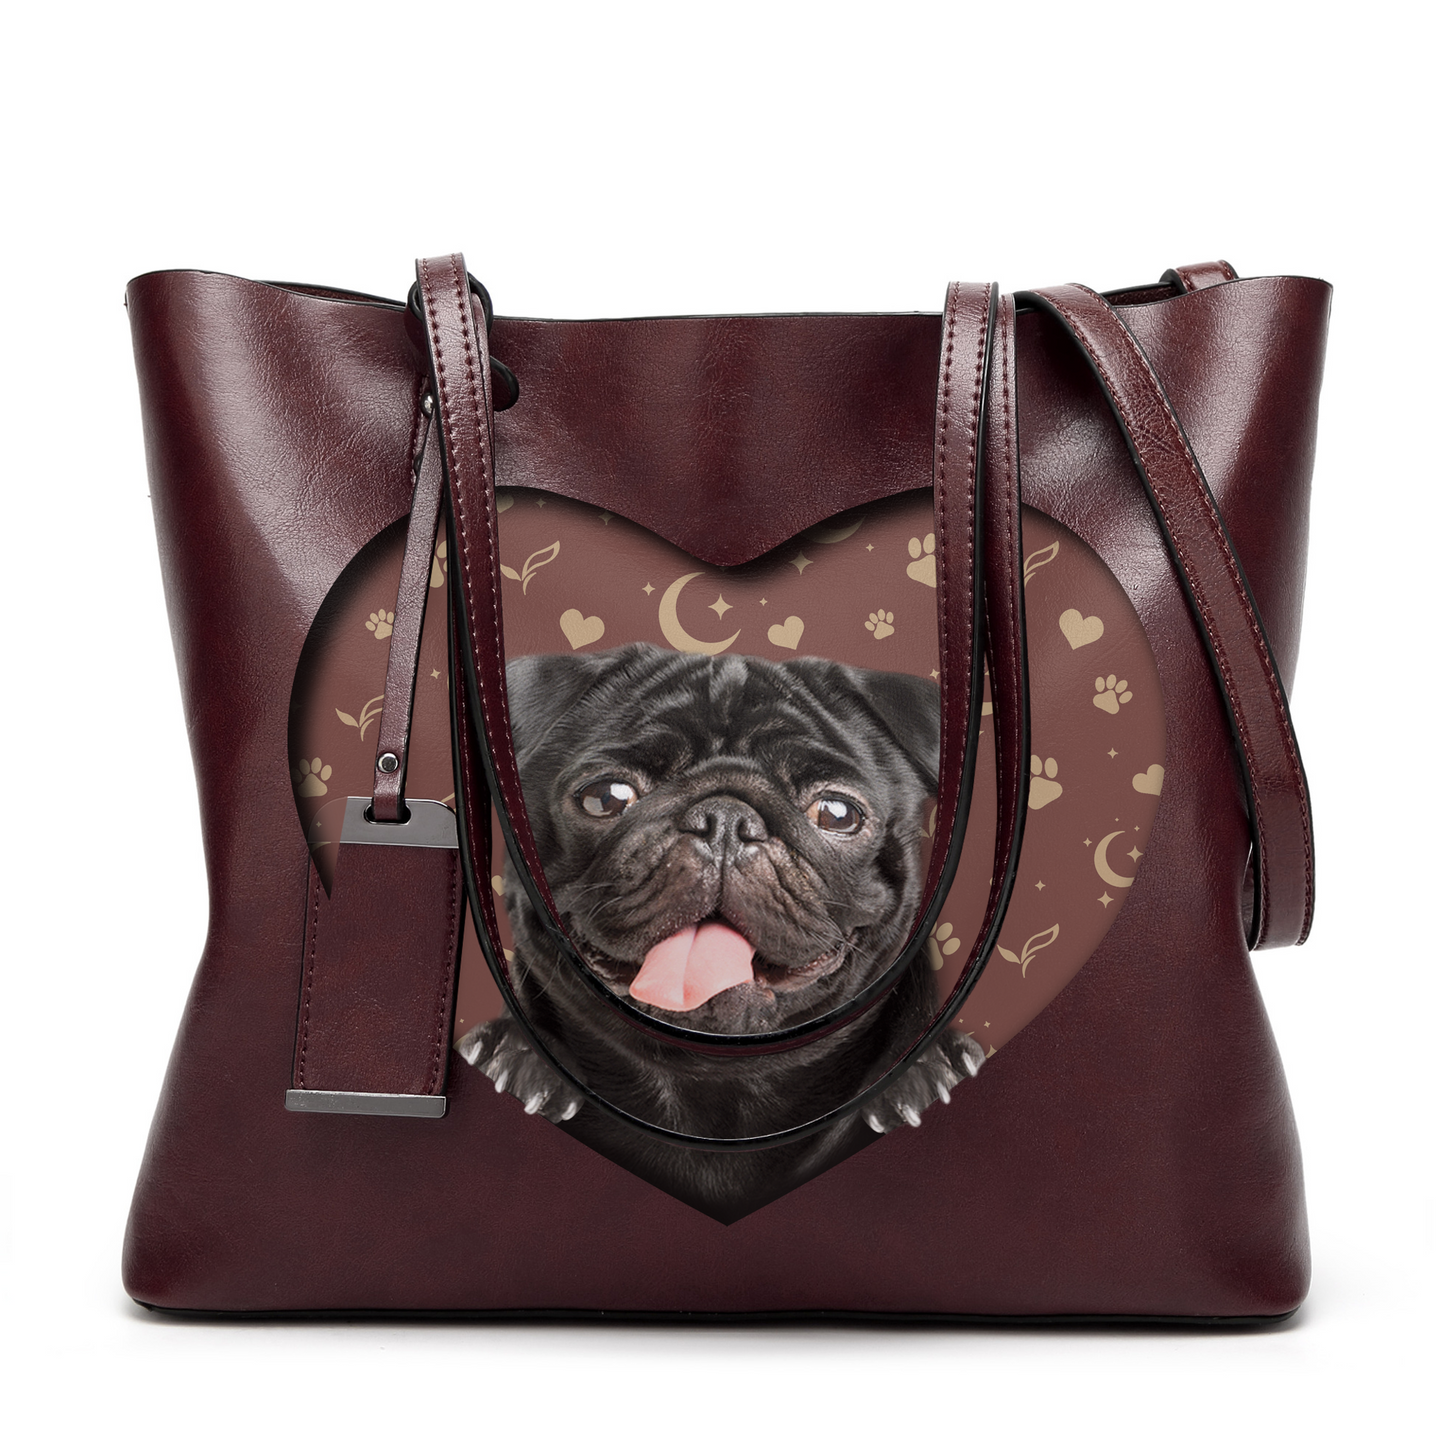 I Know I'm Cute - Pug Glamour Handbag V2 - 5